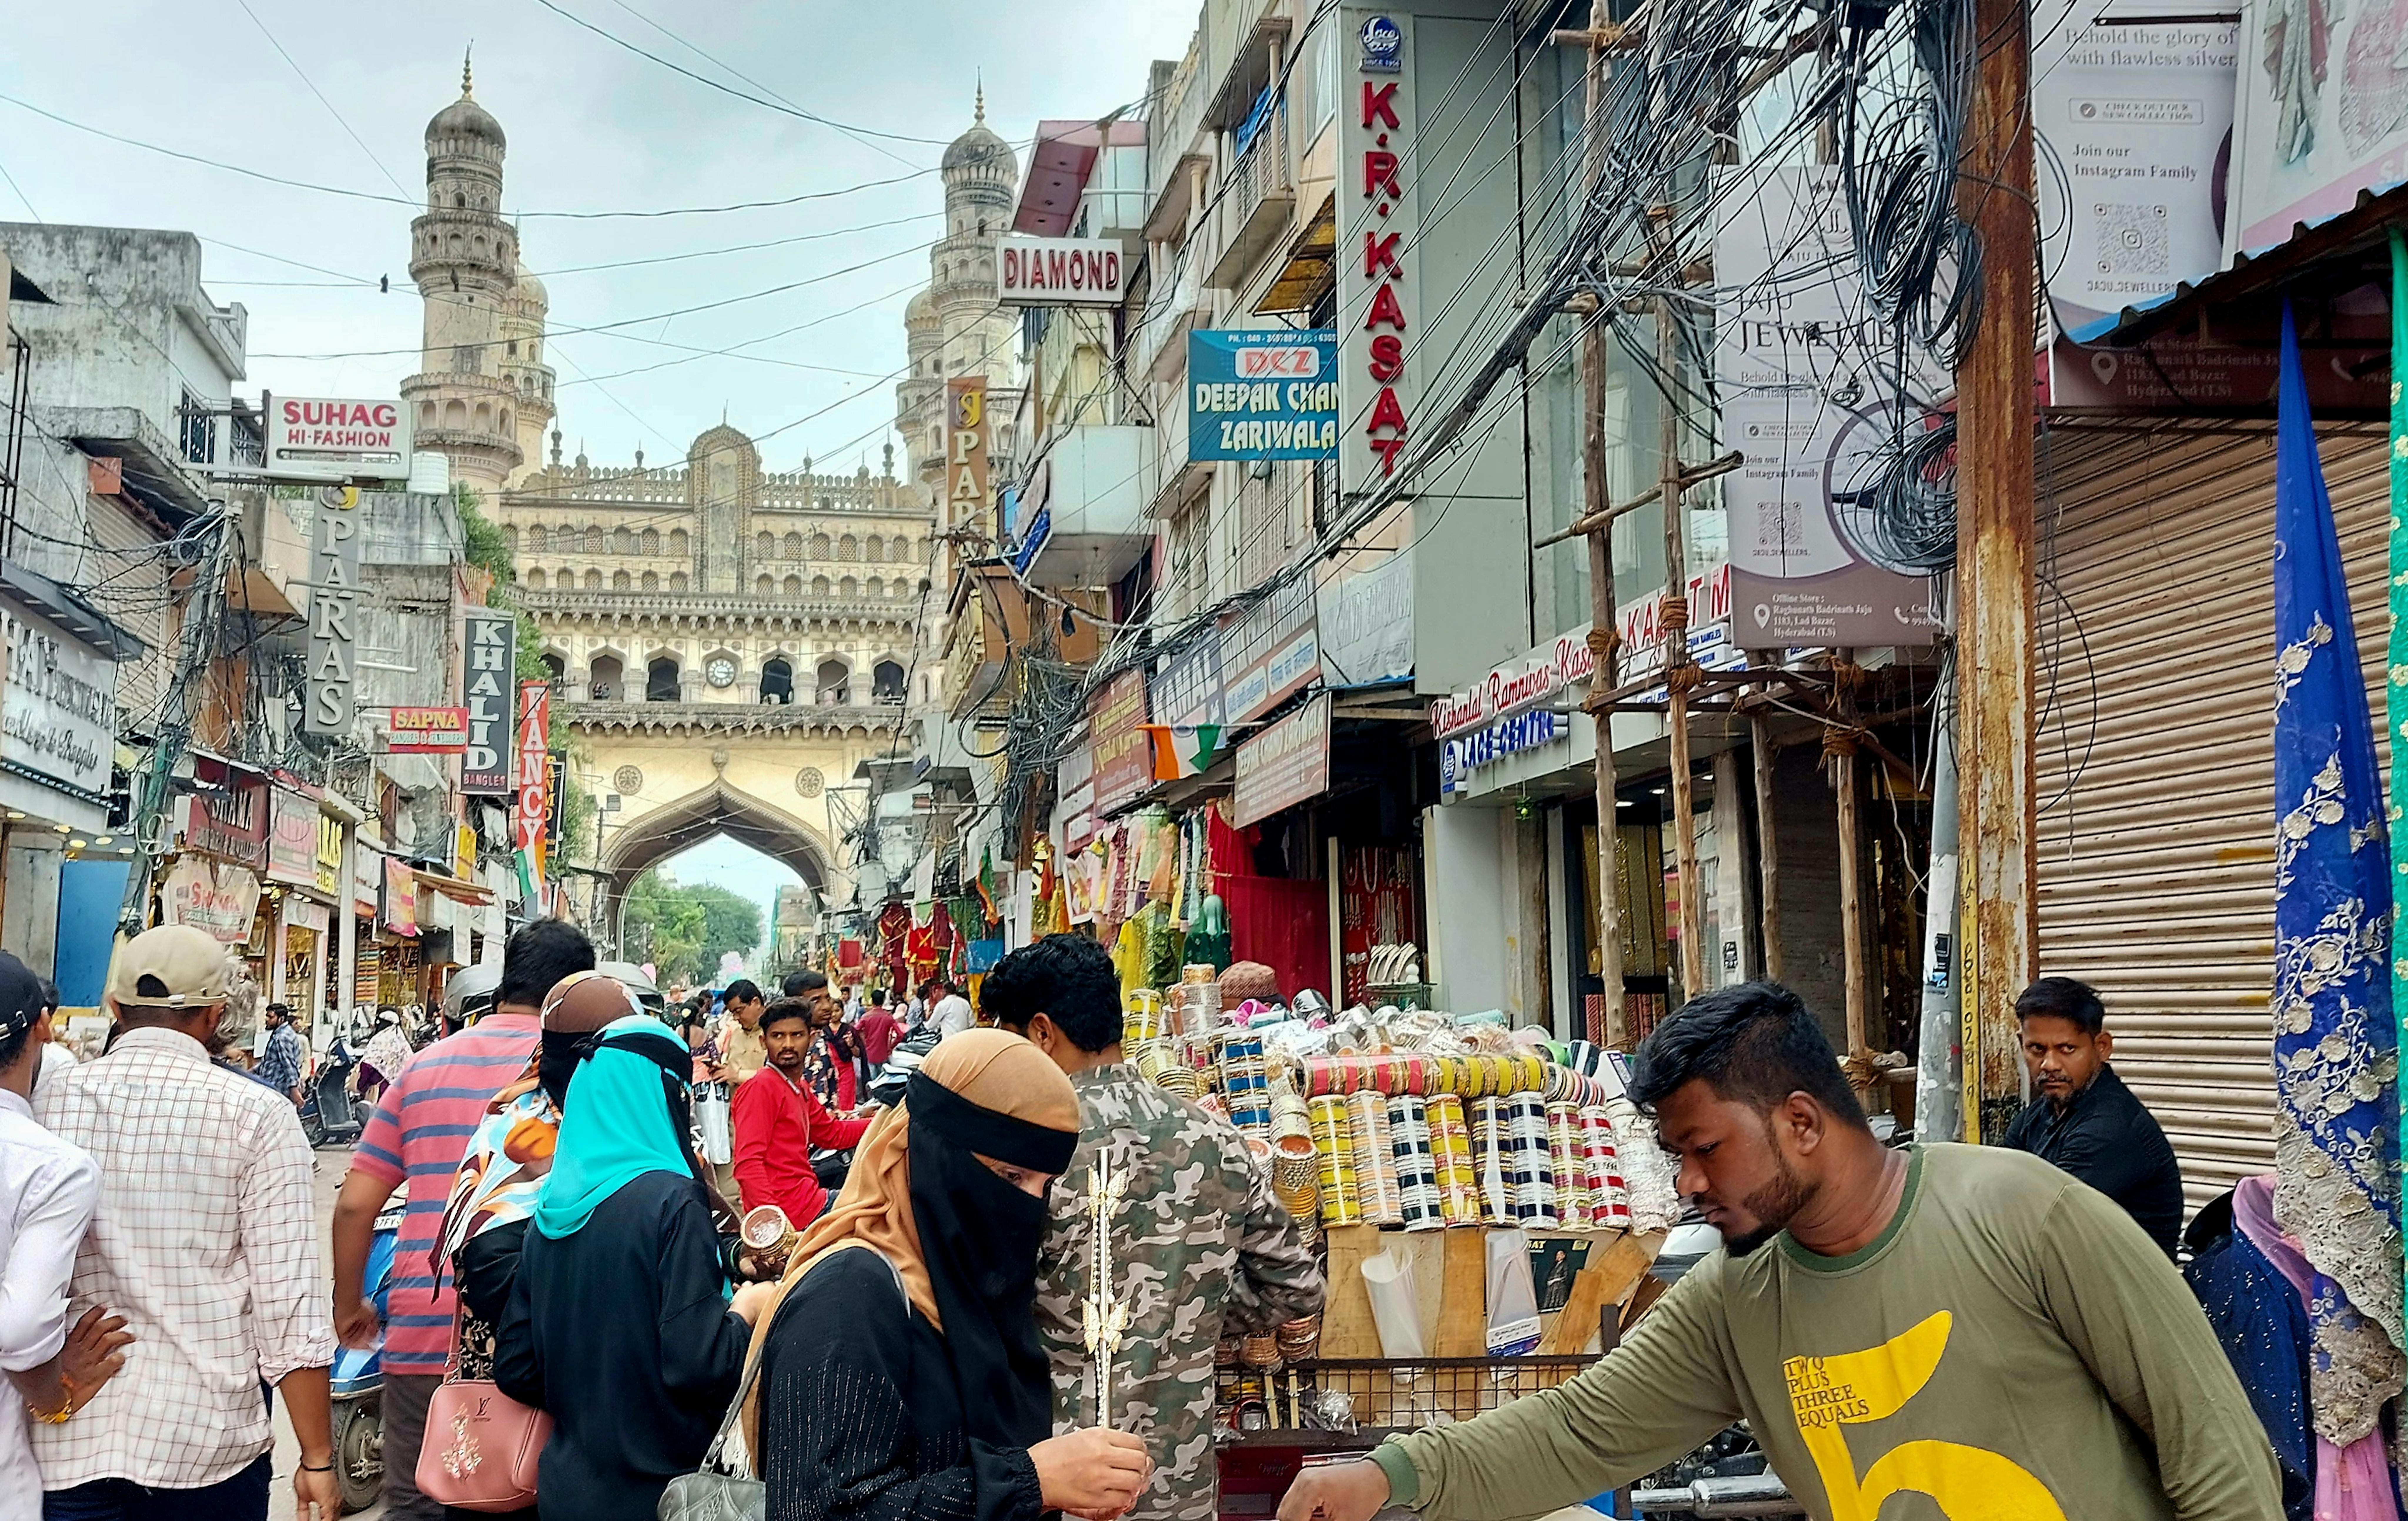 Il bazar di Charminar, il monumento simbolo di Hyderabad, che si si vede sullo sfondo.